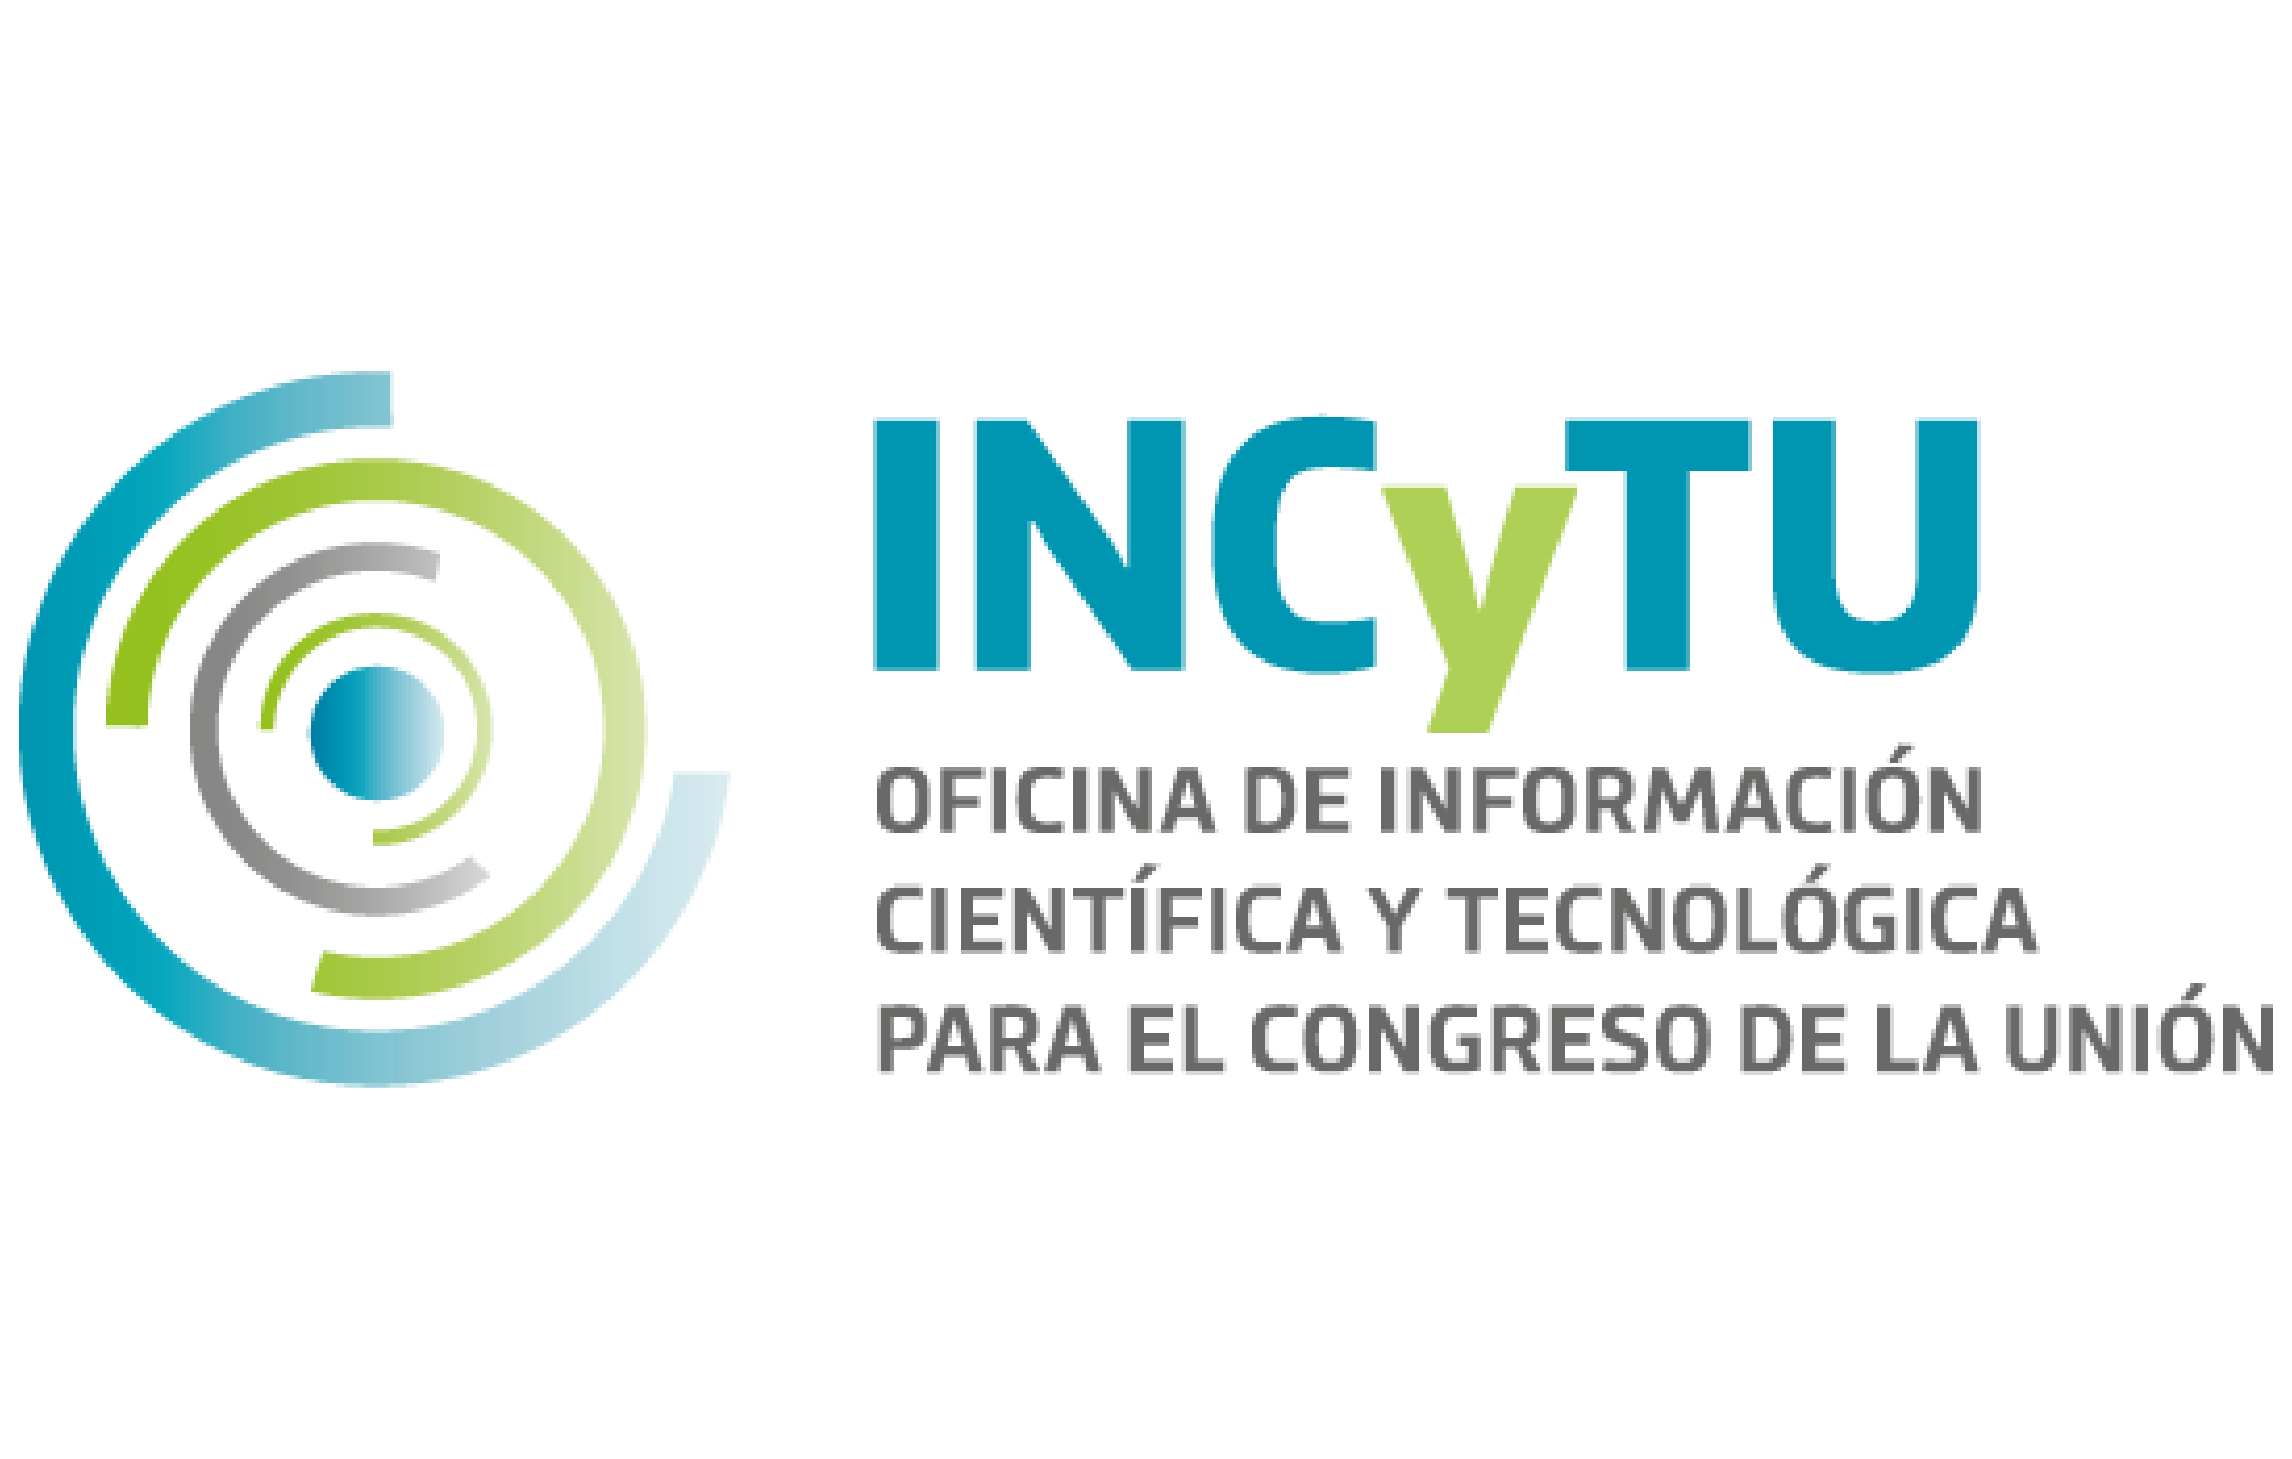 Página principal de la web de la Oficina de Información Científica y Tecnológica para el Congreso de la Unión de México